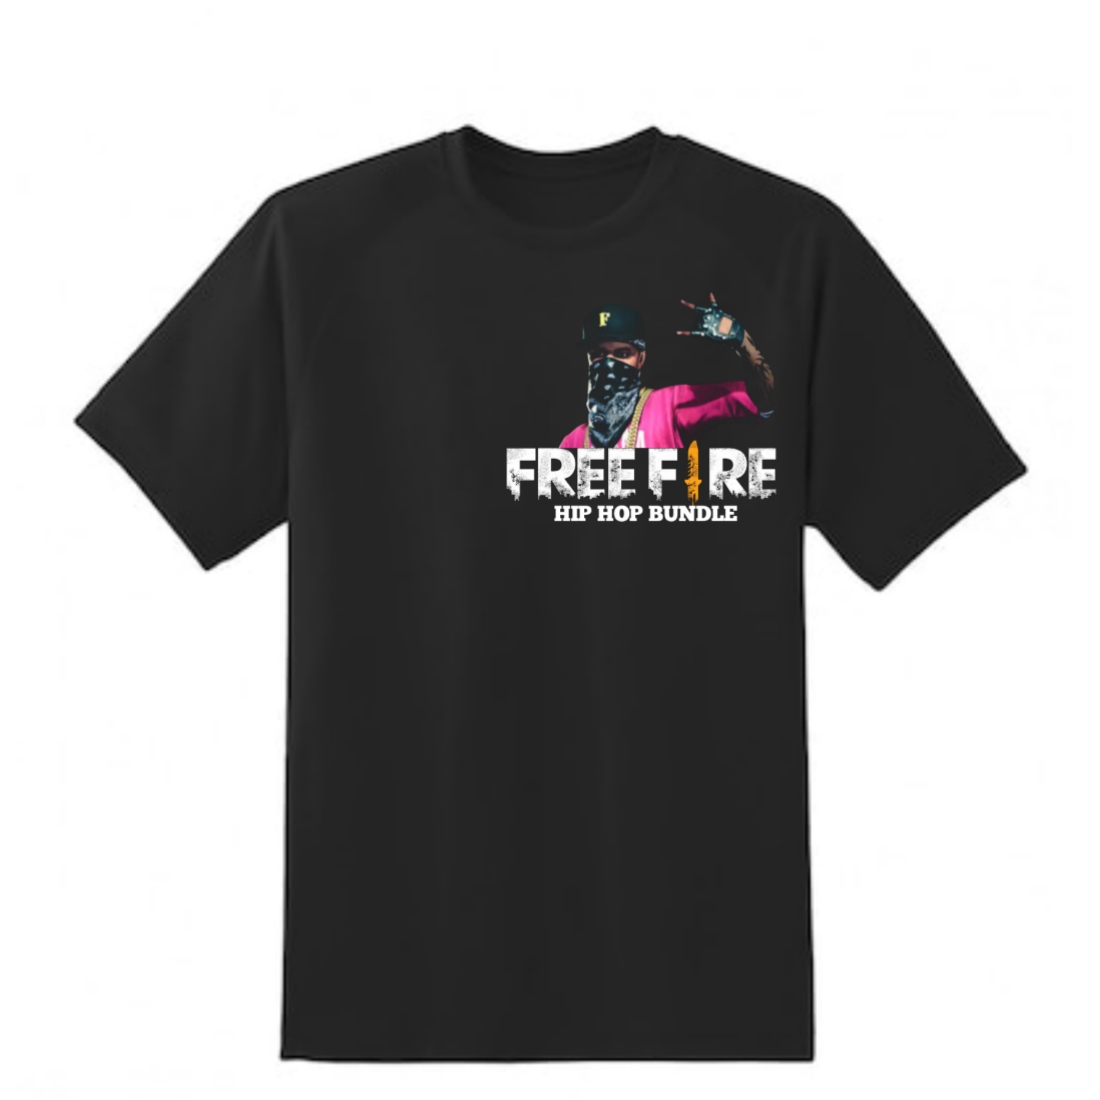 Free fire hip hop bundle T-shirt design preview image.